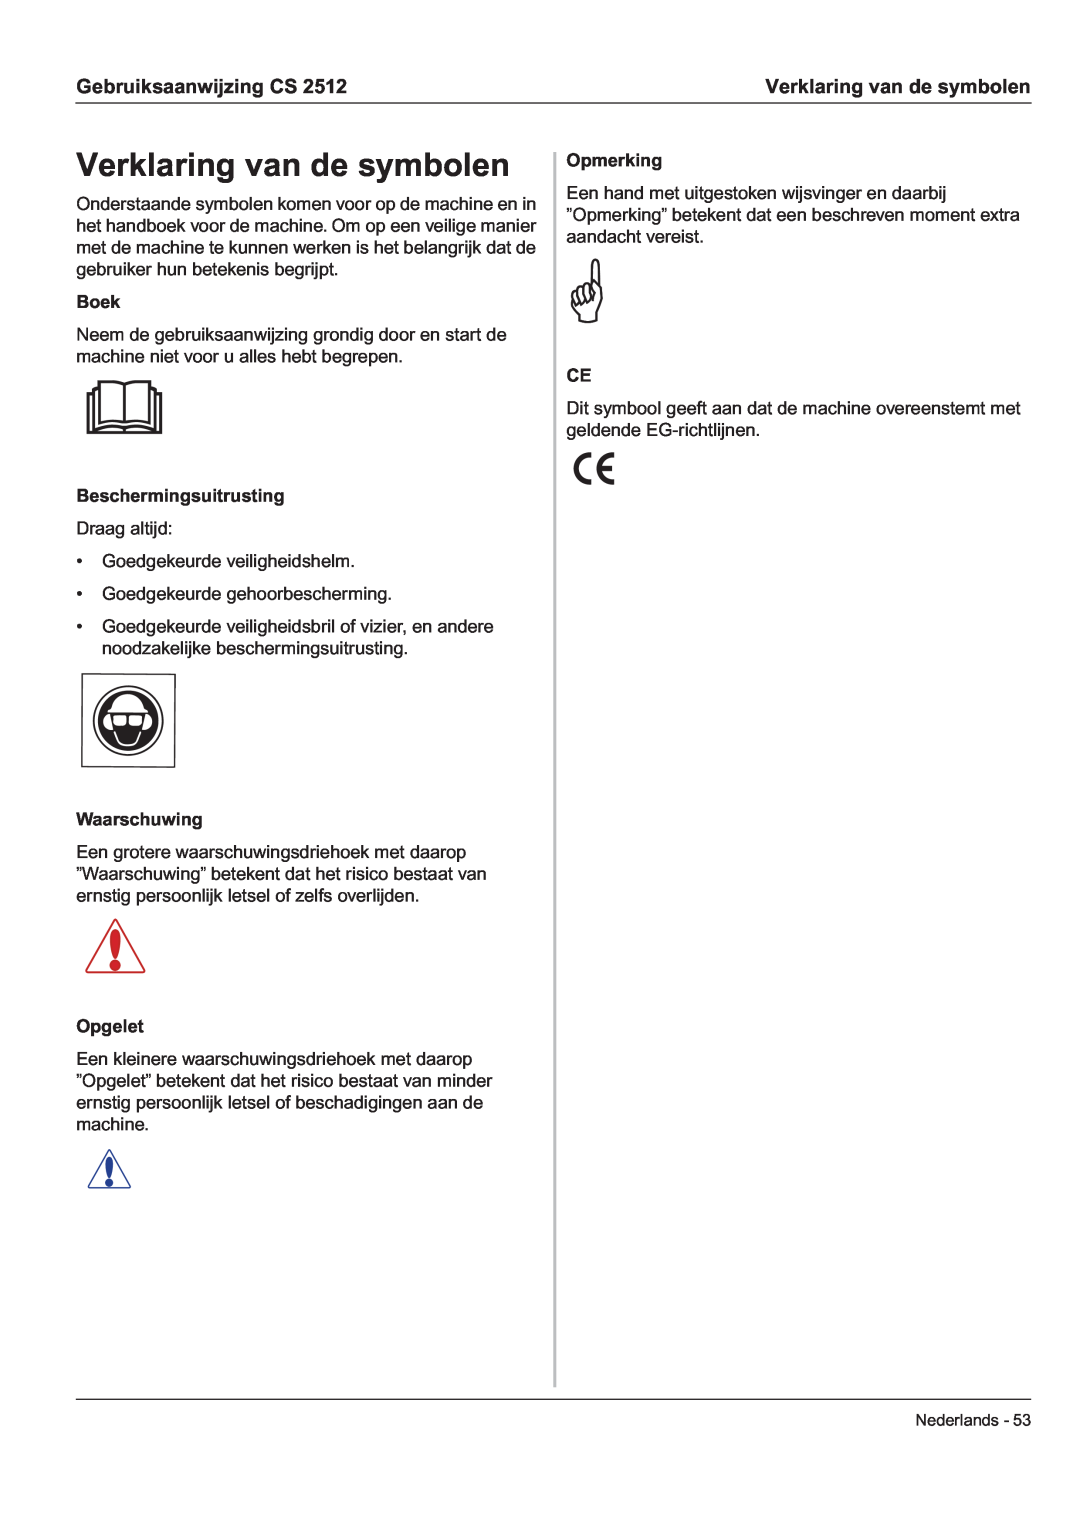 Husqvarna CS 2512 manual Verklaring van de symbolen, Gebruiksaanwijzing CS 